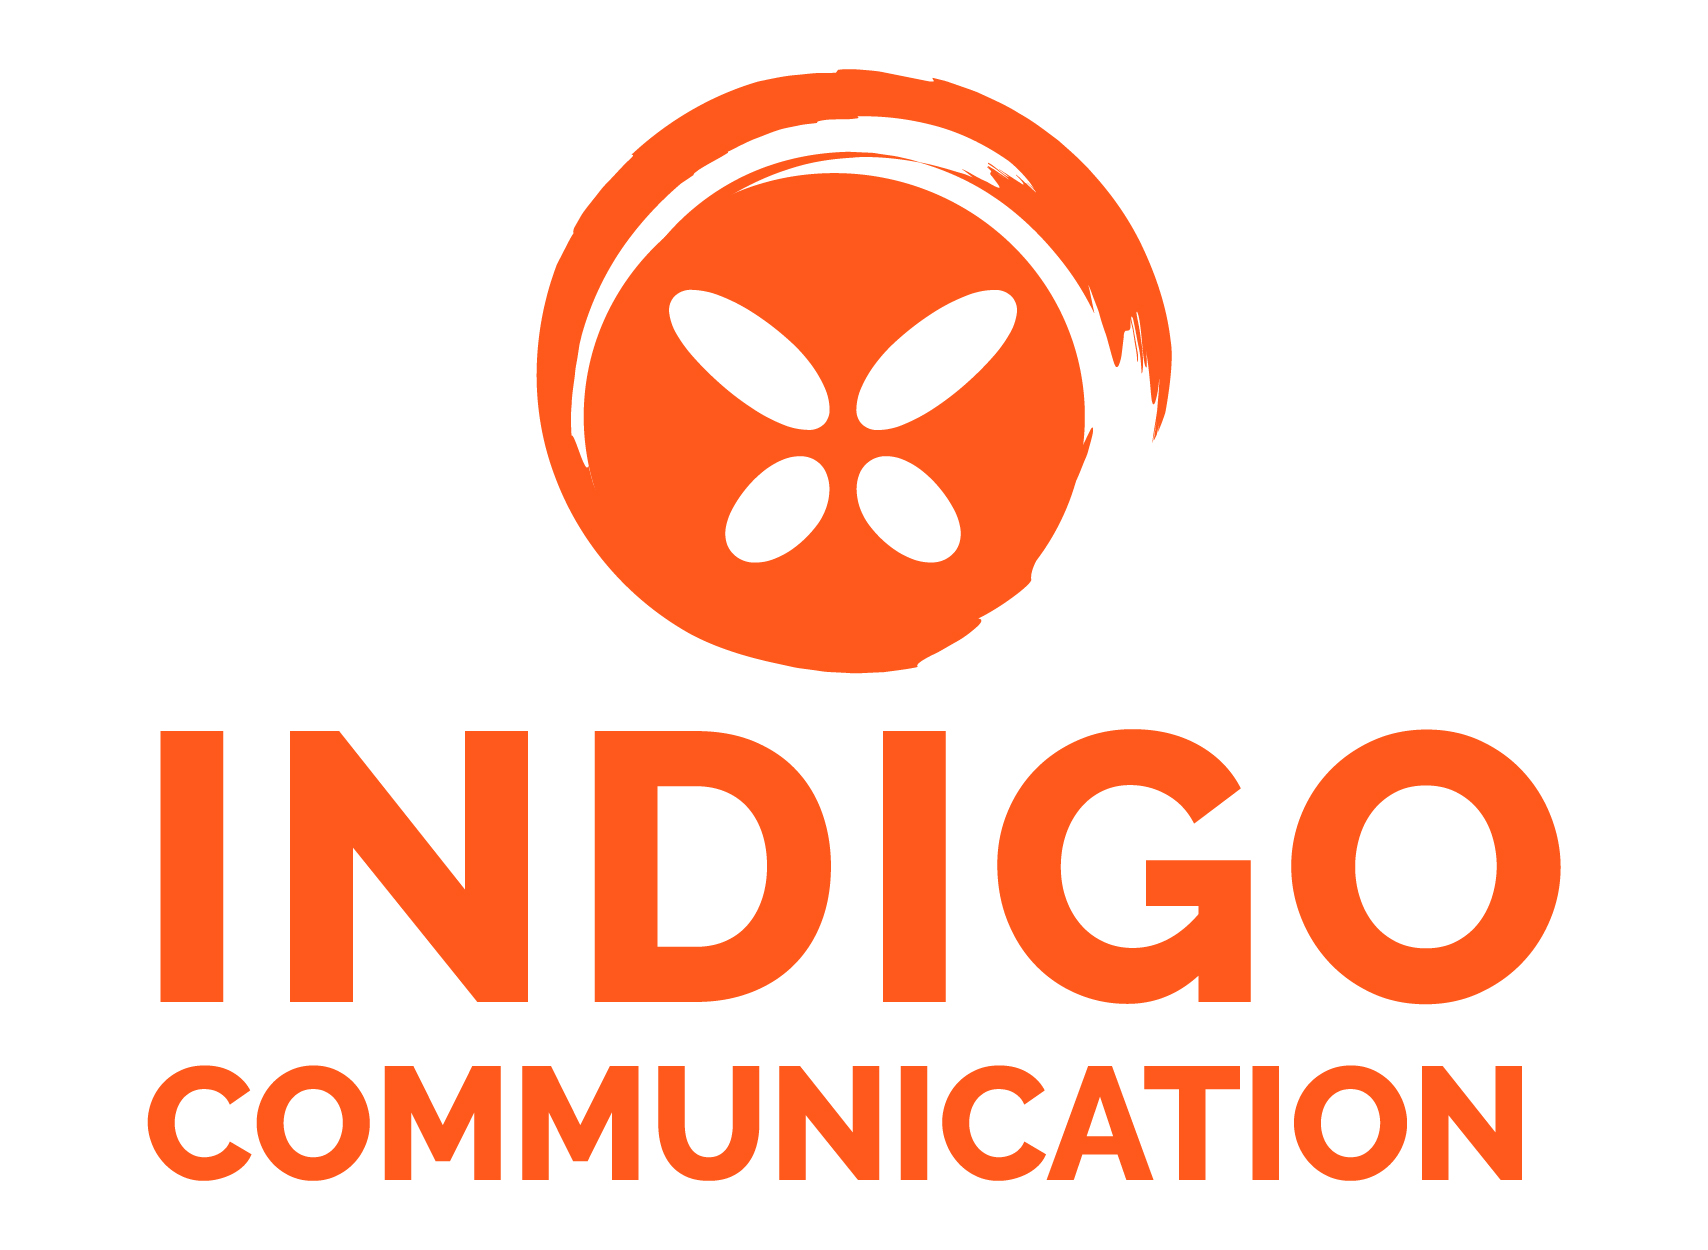 Indigo communication